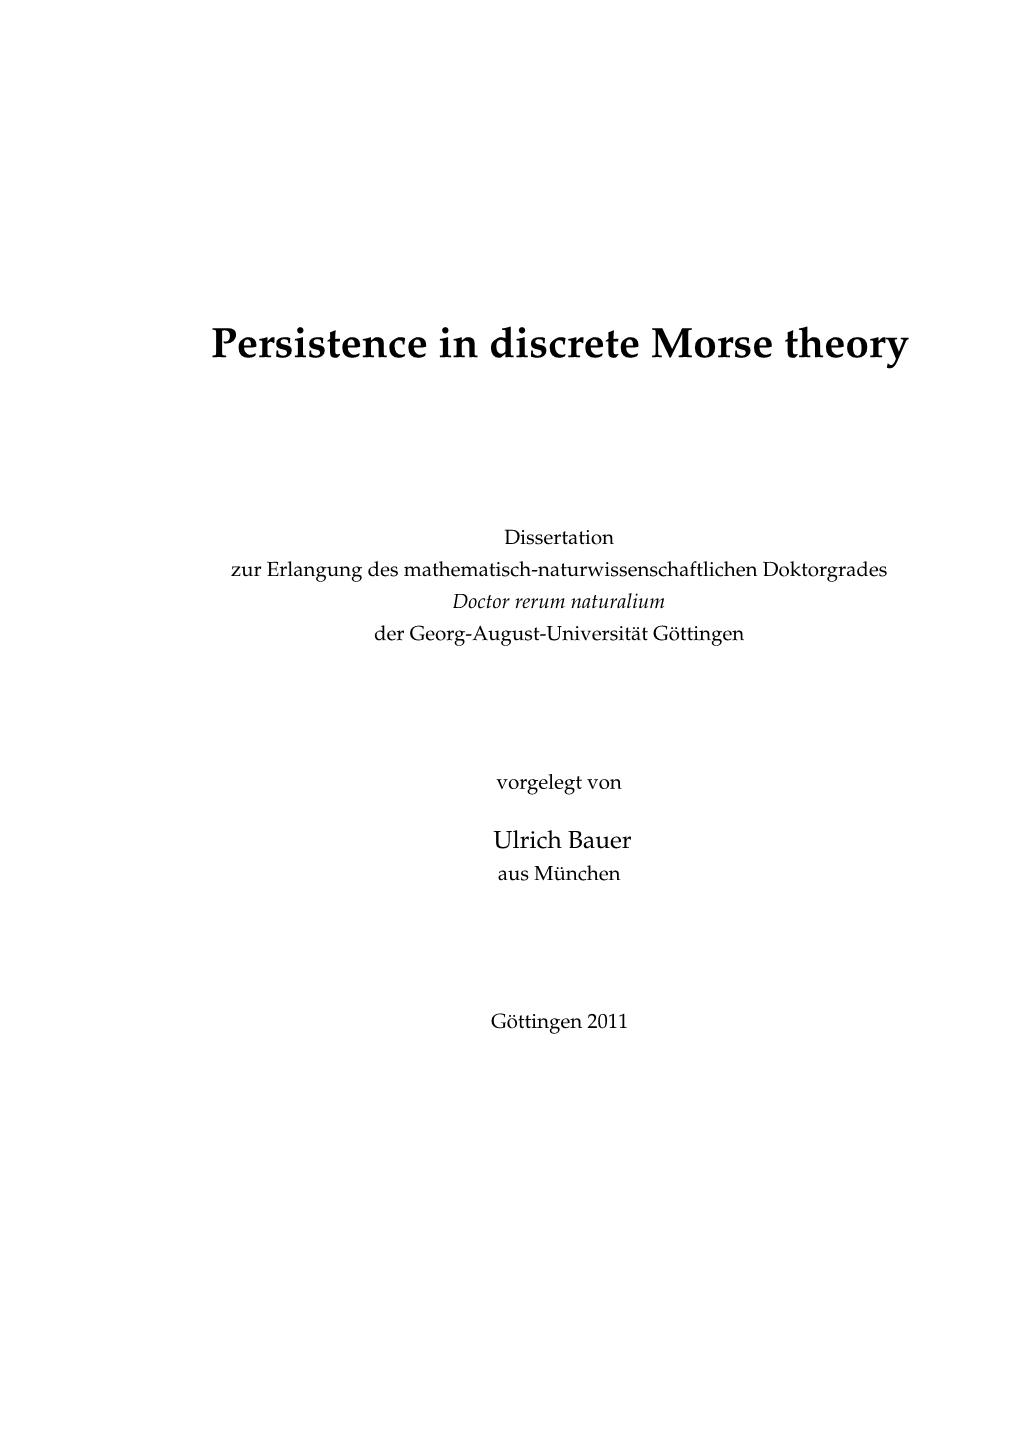 Persistence in Discrete Morse Theory